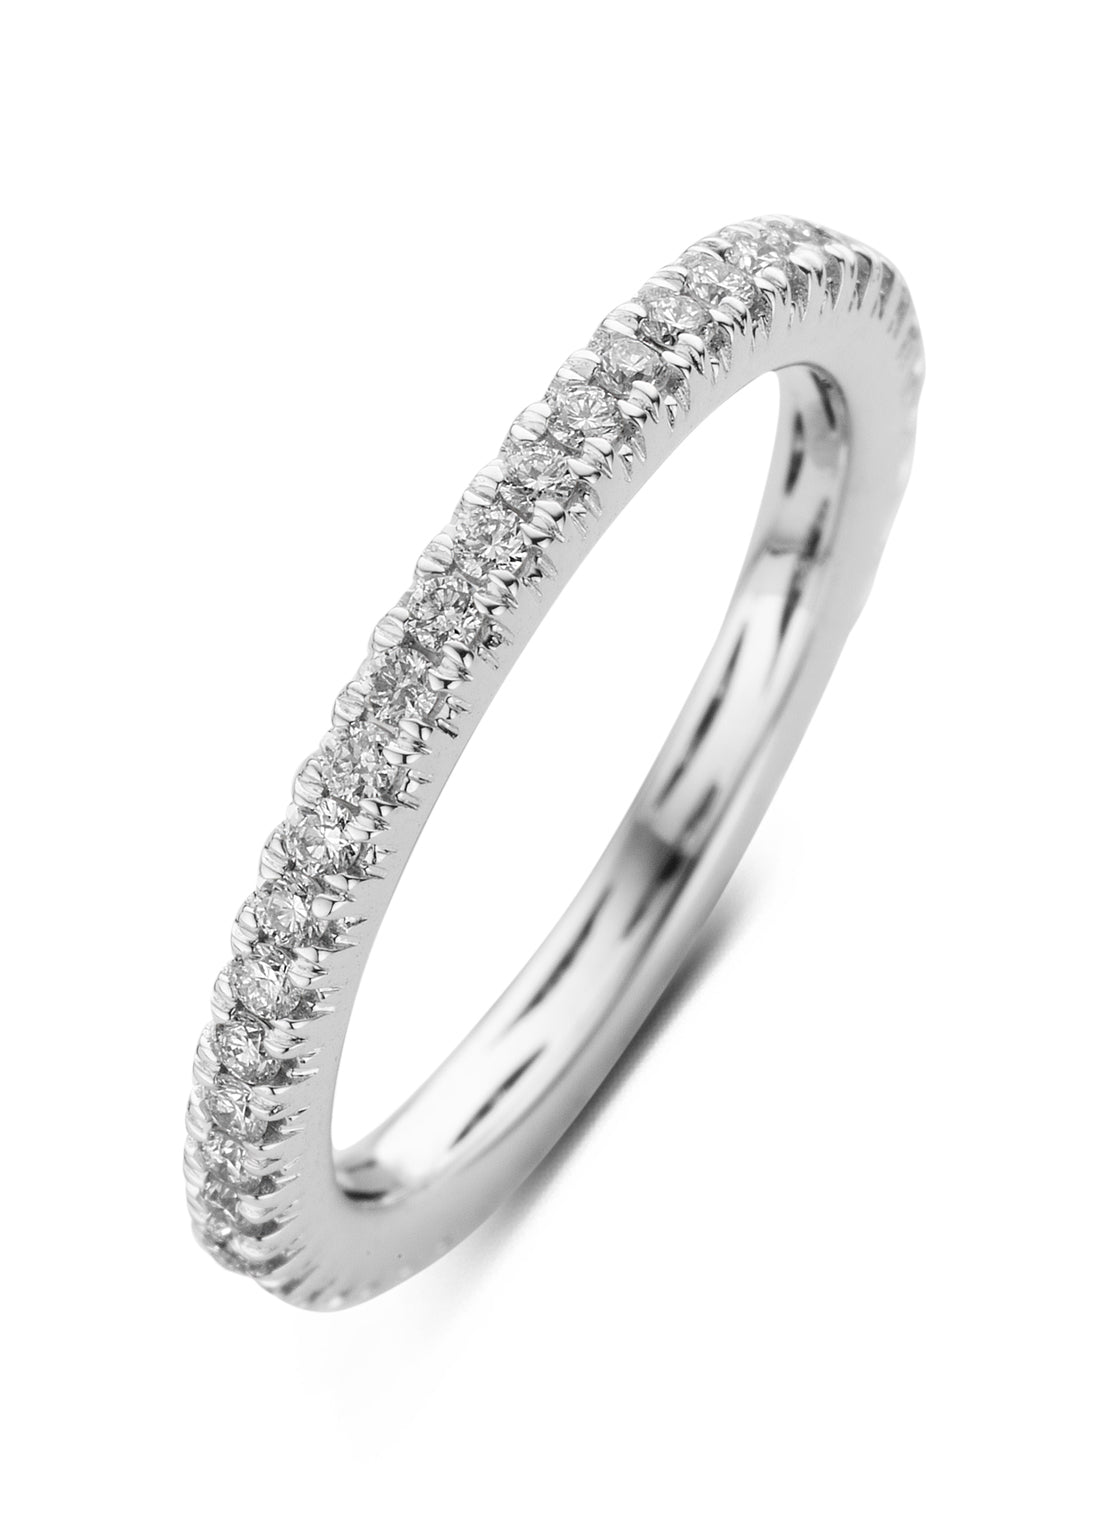 White gold ring, 0.50 ct diamond, ensemble